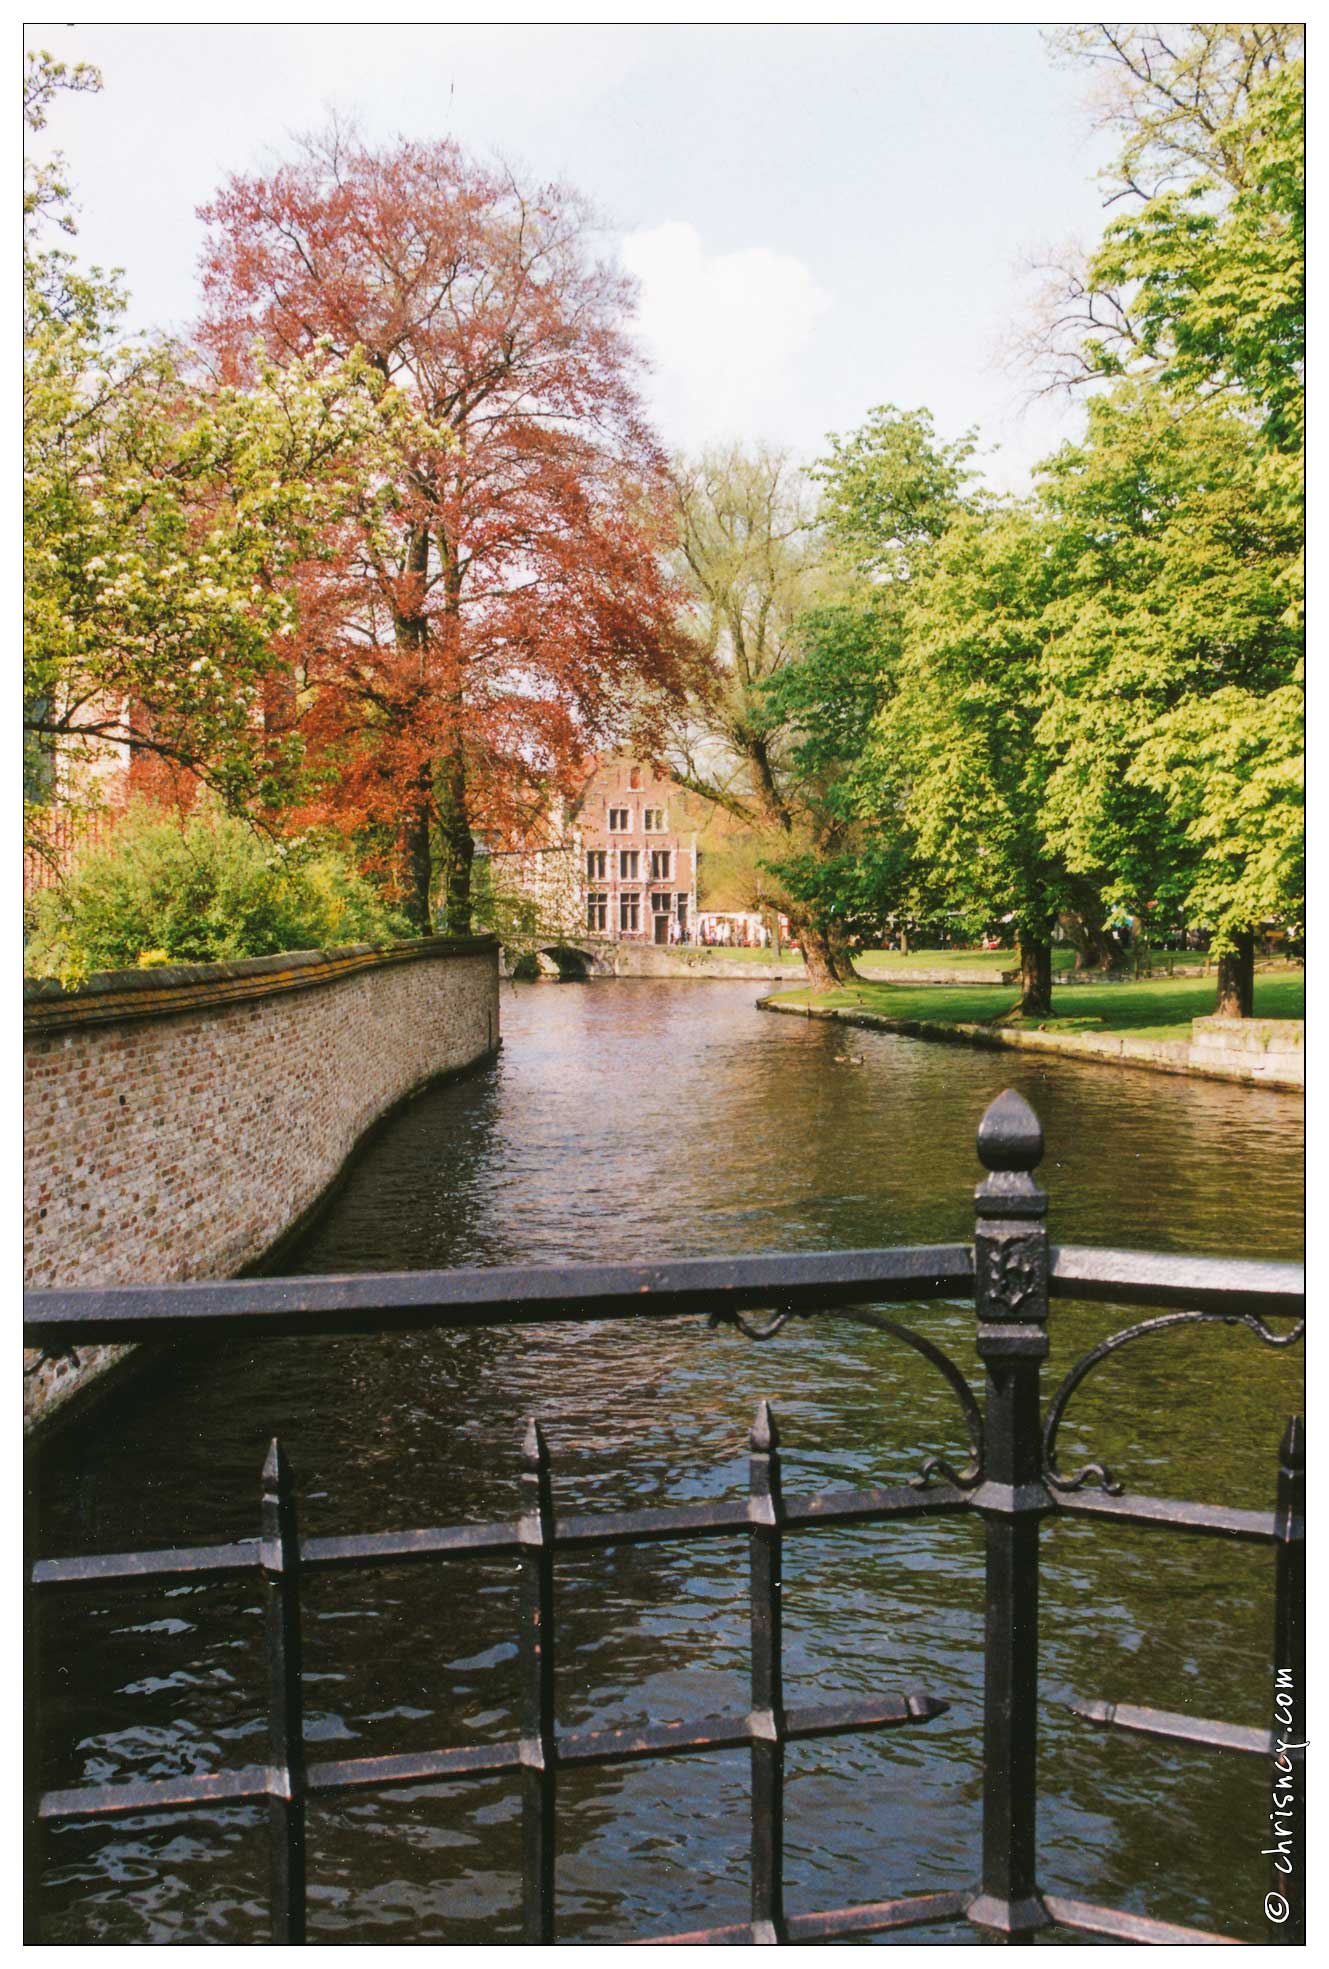 19990400-0031-Brugge.jpg